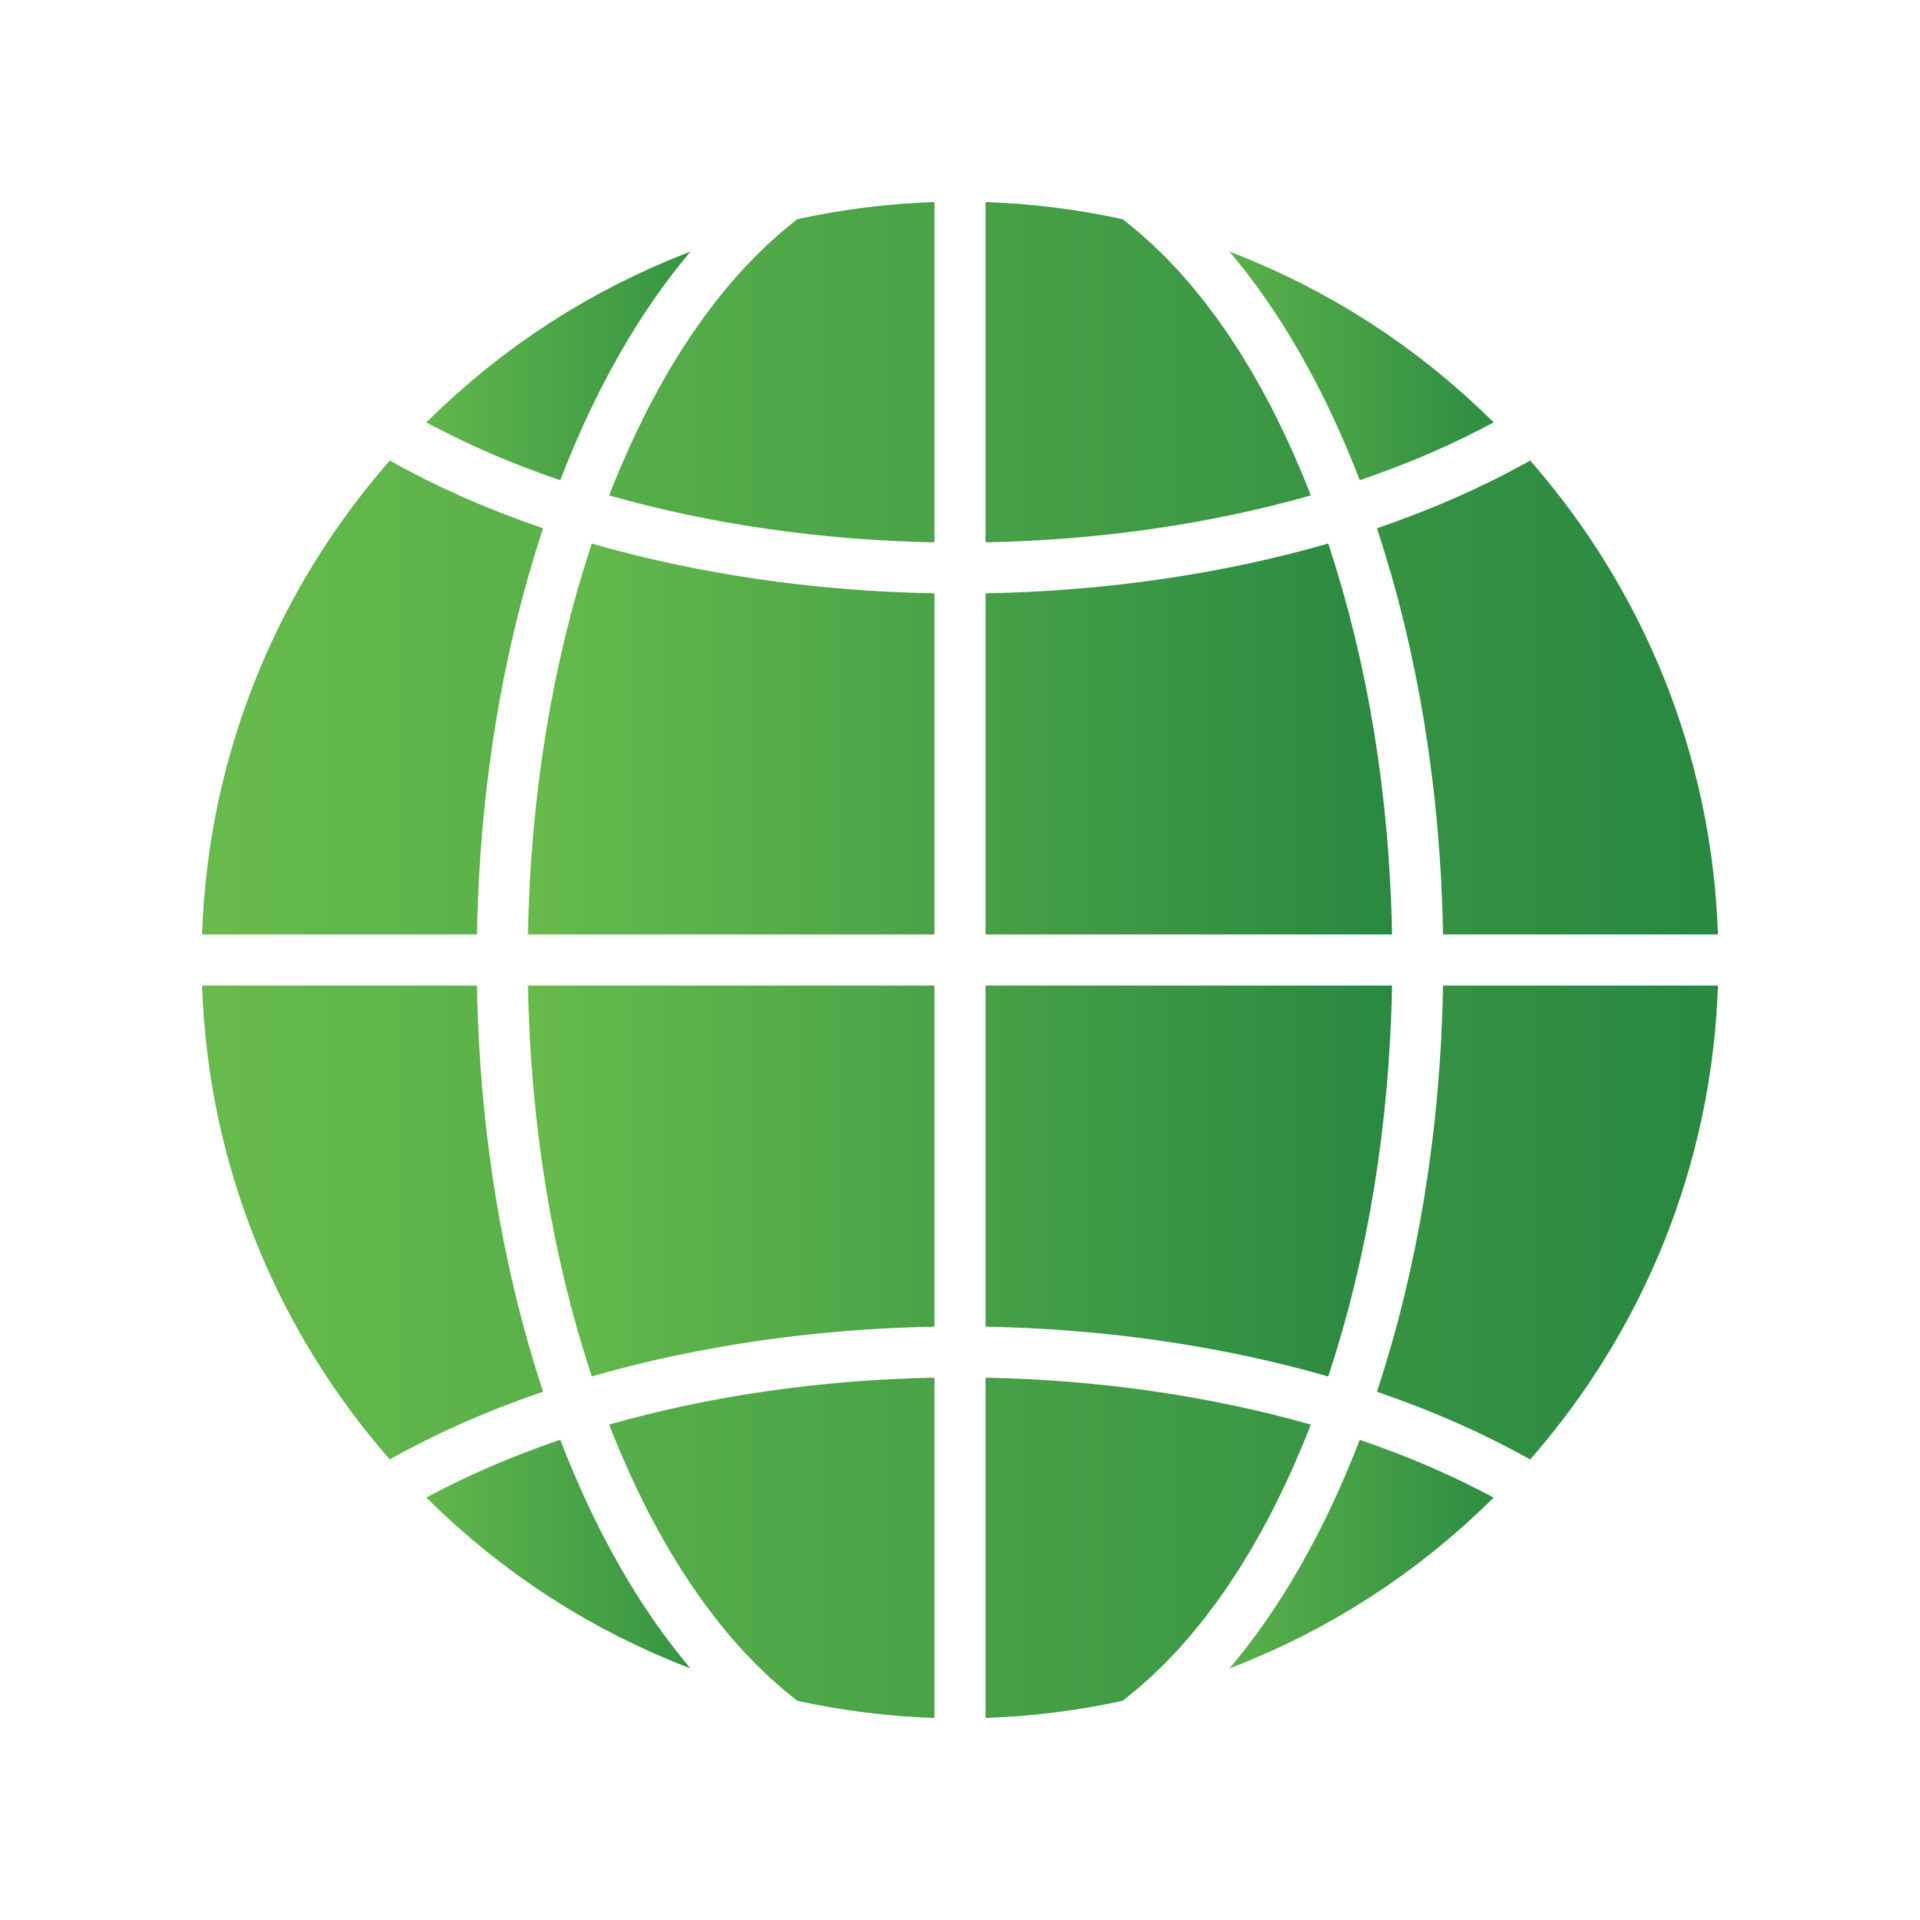 10524761 icone site verde isolado em fundo branco ambiente conceito ilustracao para qualquer design vetor